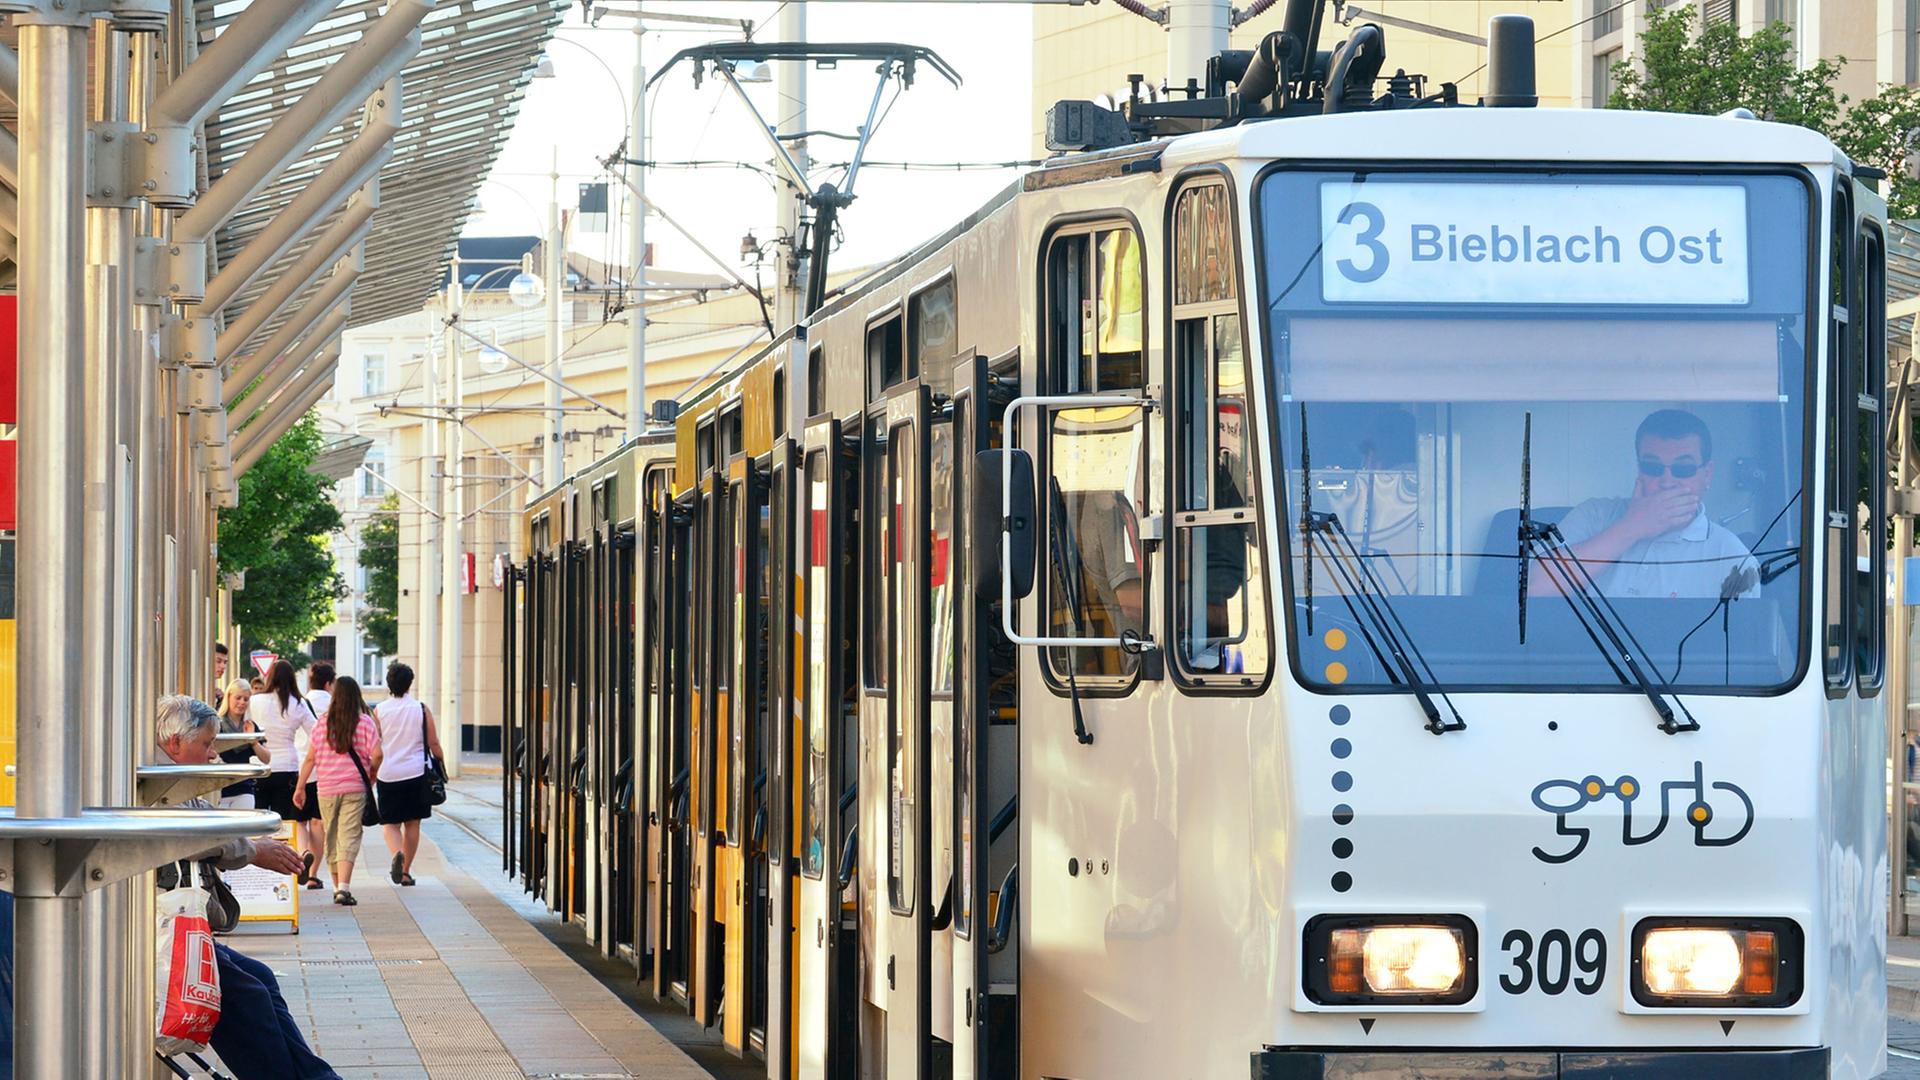 Straßenbahn in Gera: Die Verkehrsbetriebe mussten Insolvenz anmelden.